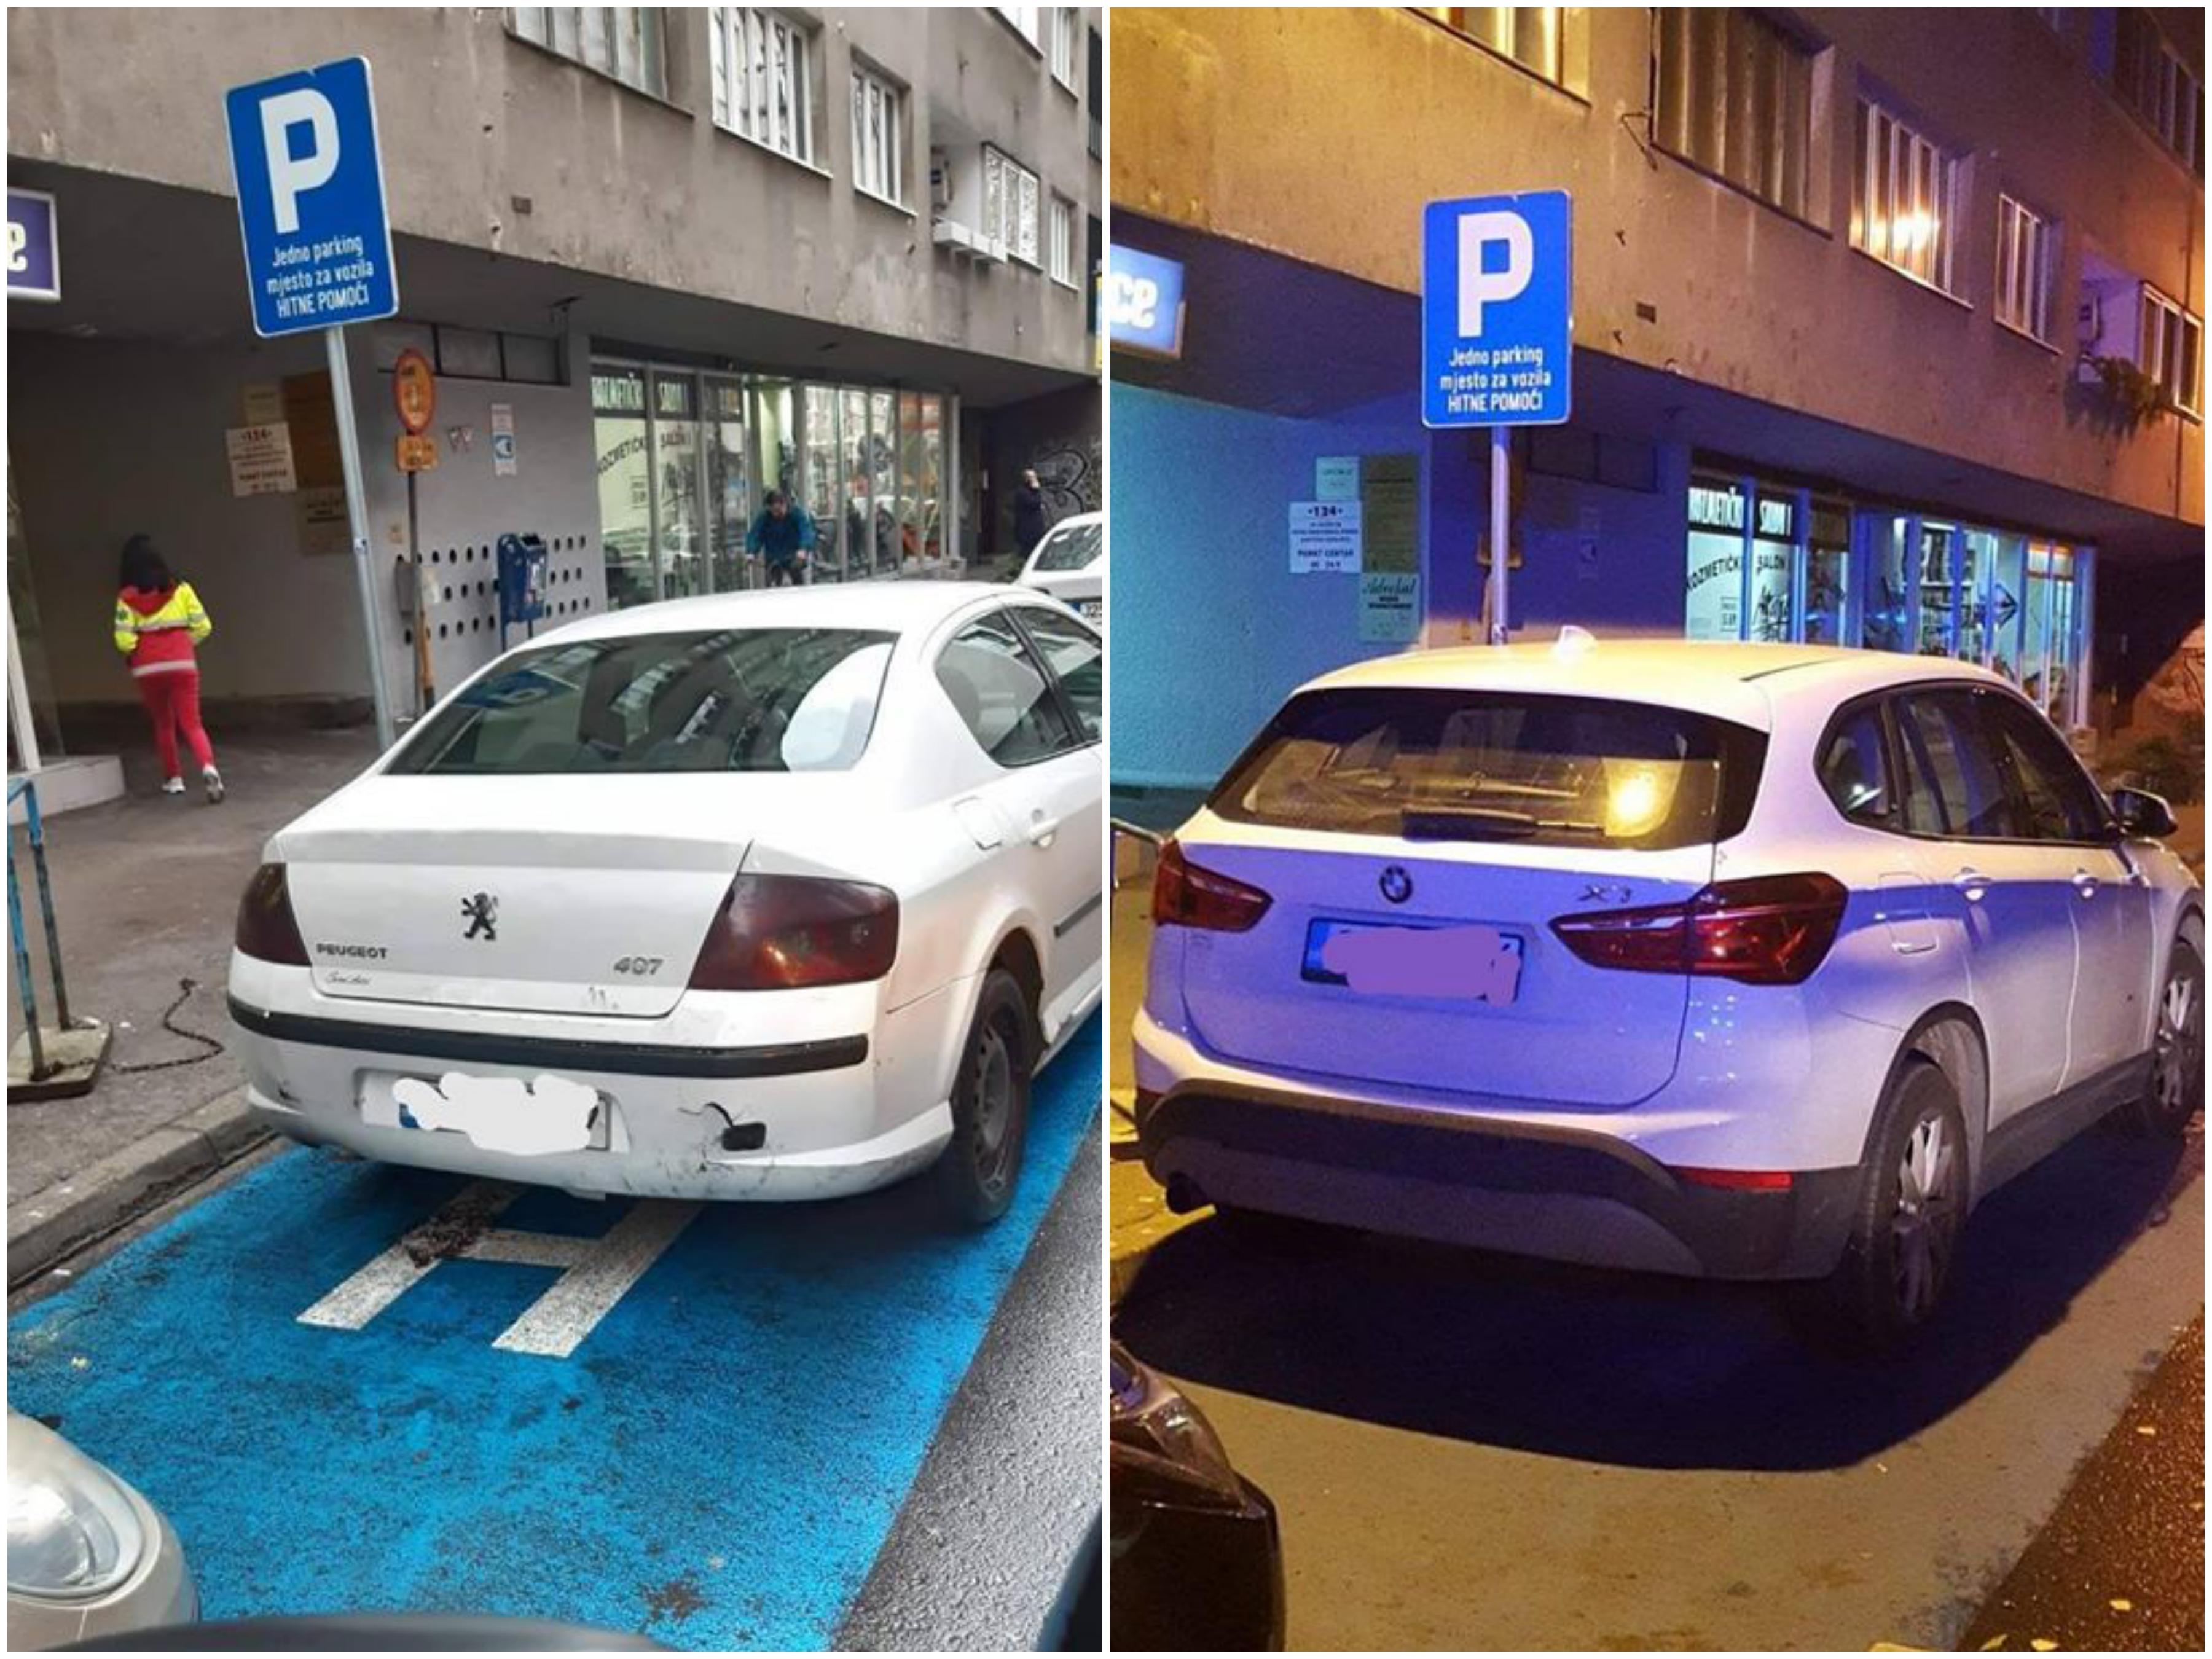 Ne parkirajte na mjesto označeno za vozilo Hitne pomoći, možete ugroziti nečiji život